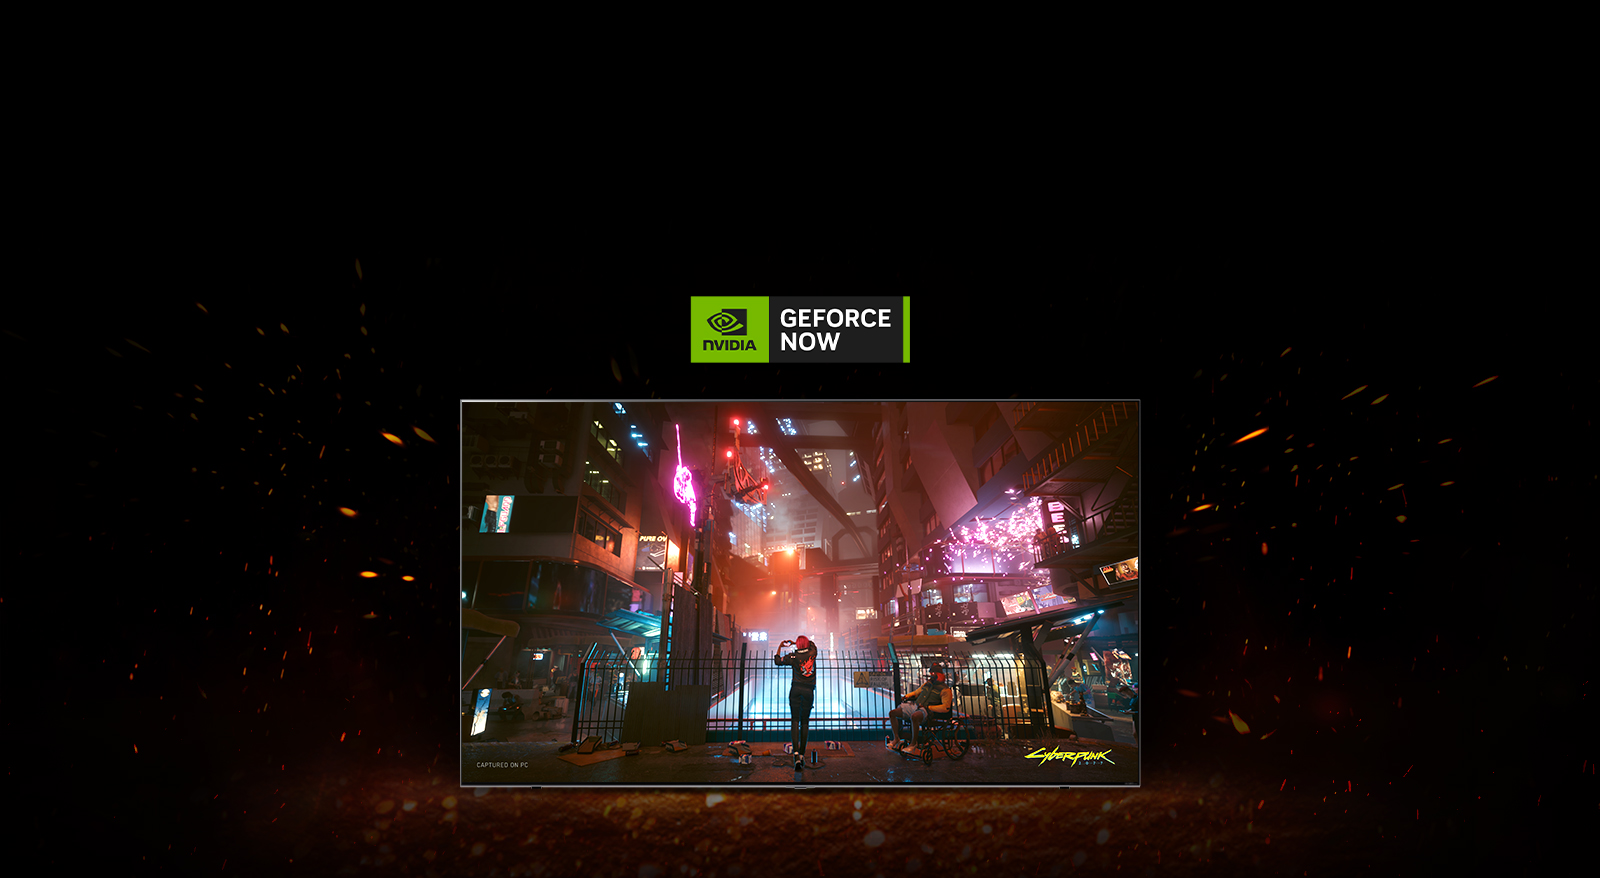 Вокруг телевизора, на экране которого показана игра Cyberpunk, видны языки пламени. Сверху телевизора показан логотип Geforce now.